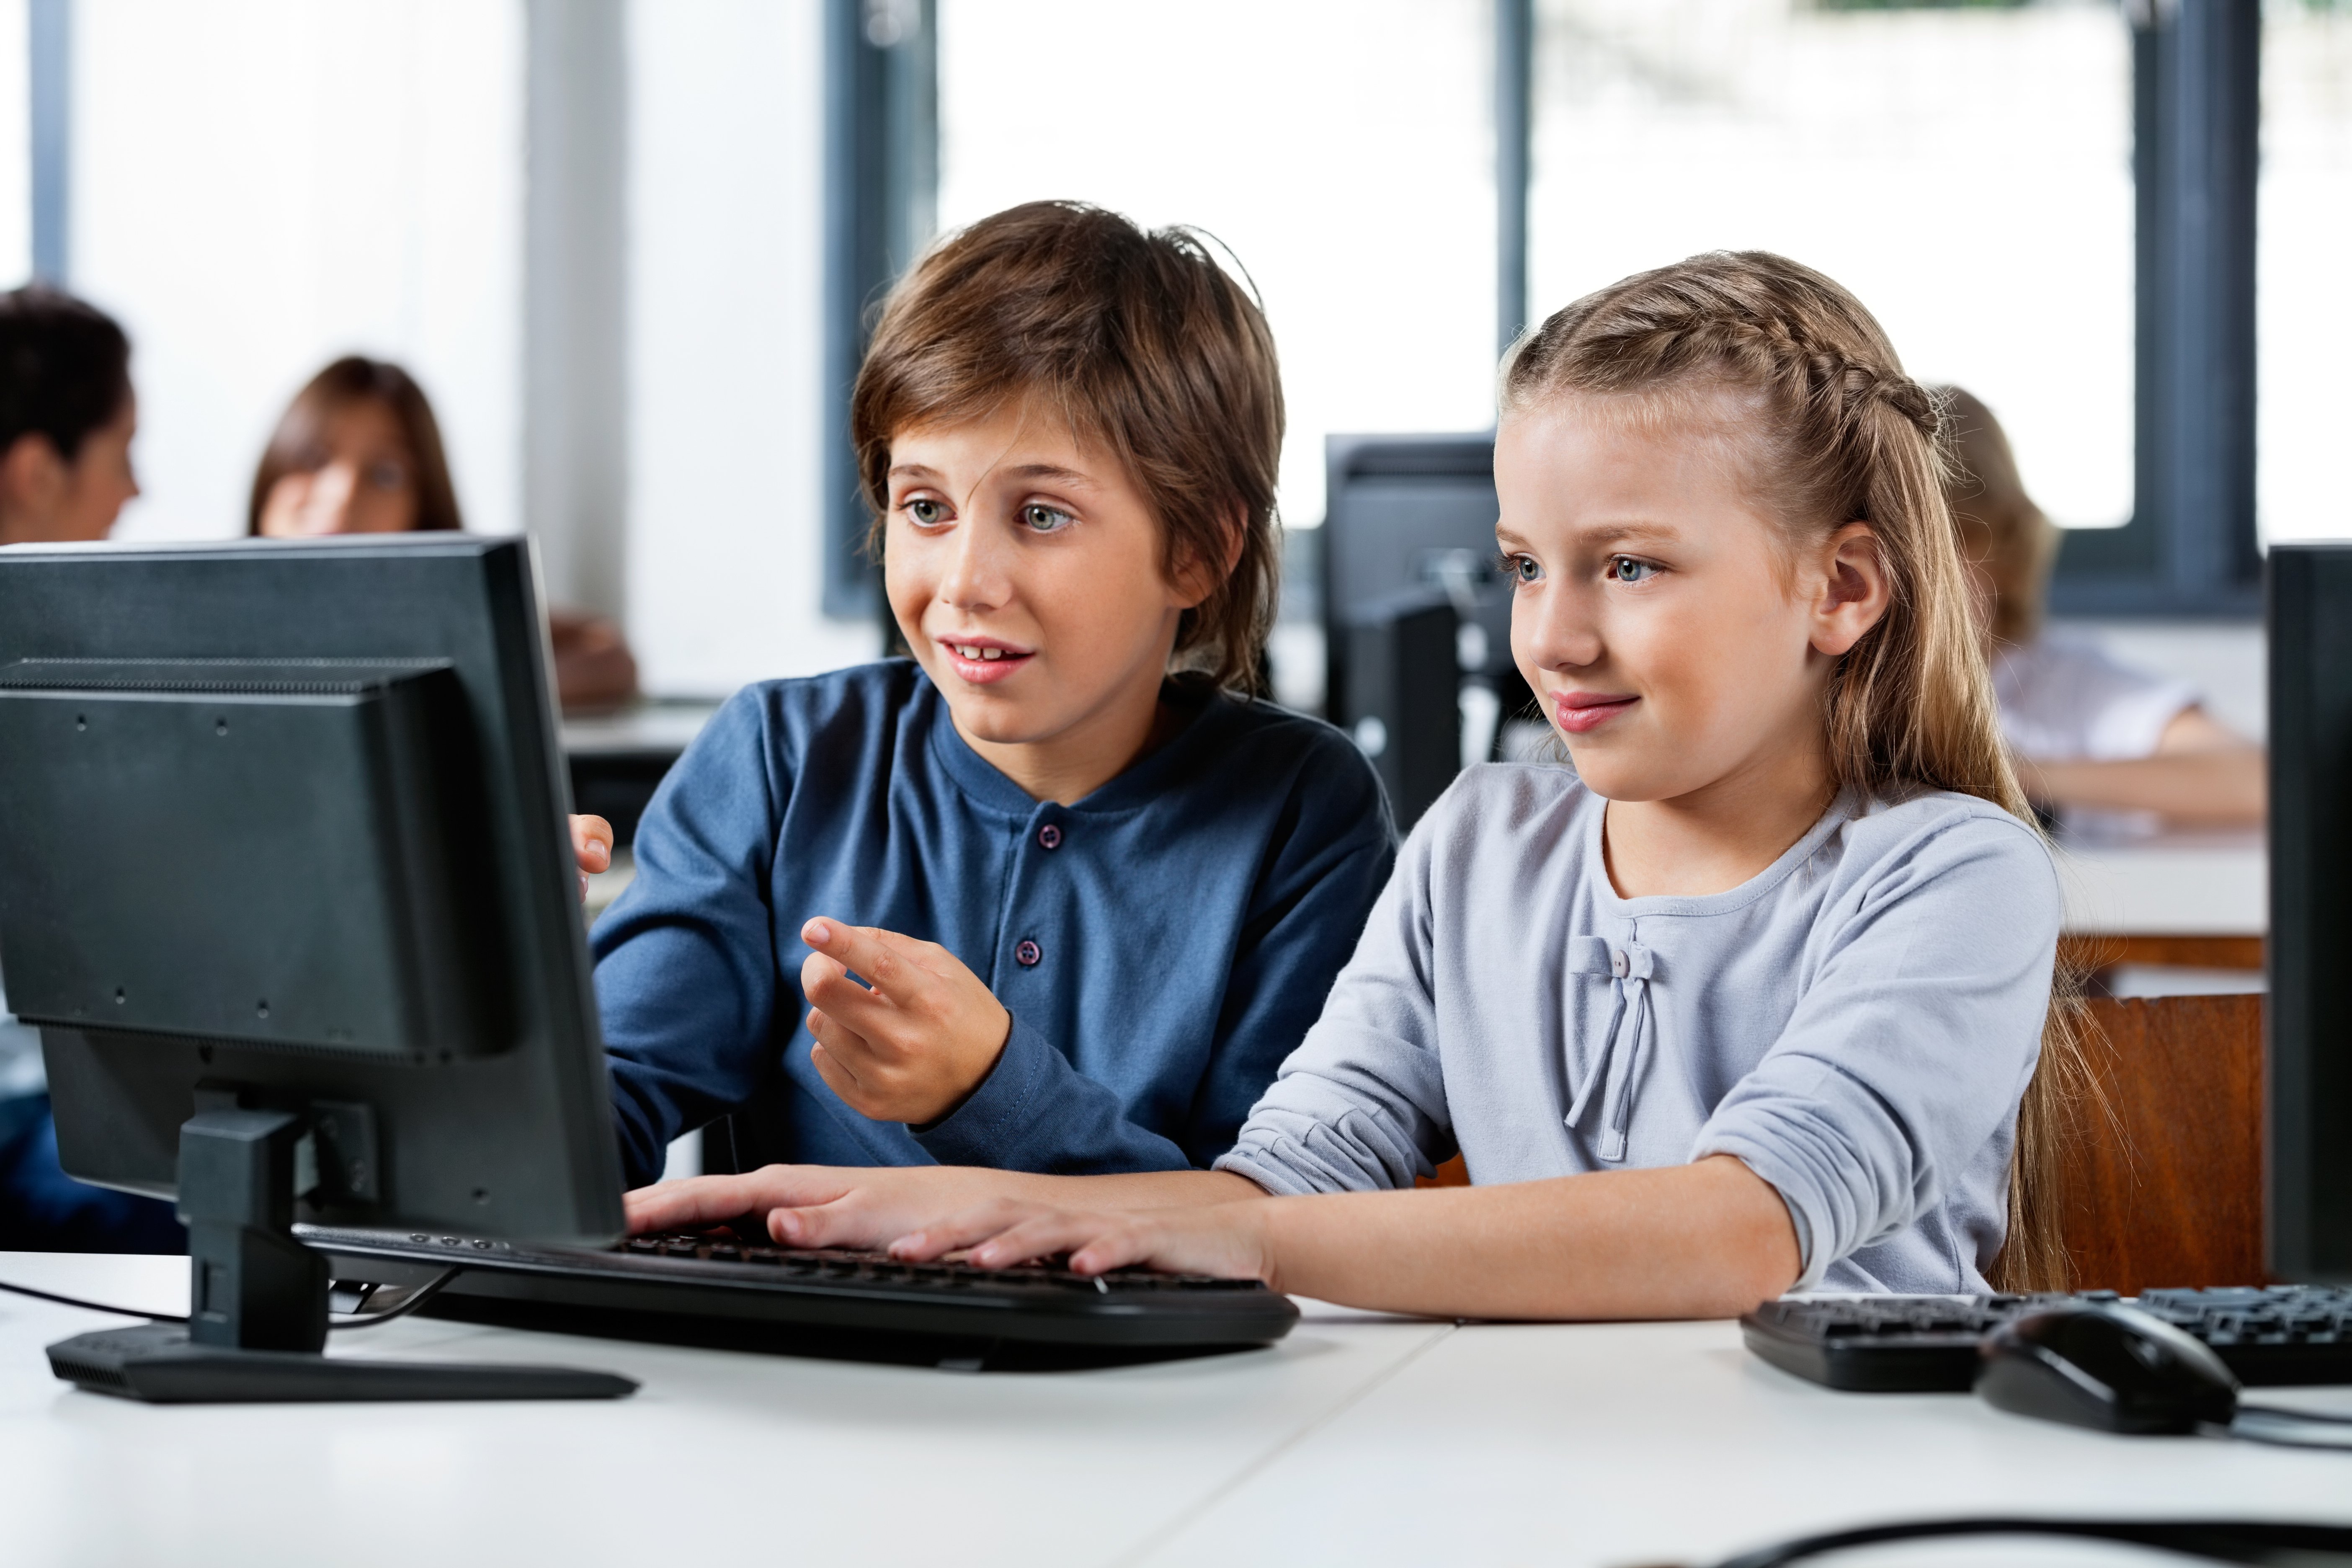 Общение в интернете 5. Компьютер для детей. Компьютер для школьника. Ребенок за компьютером. Школьник в интернете.